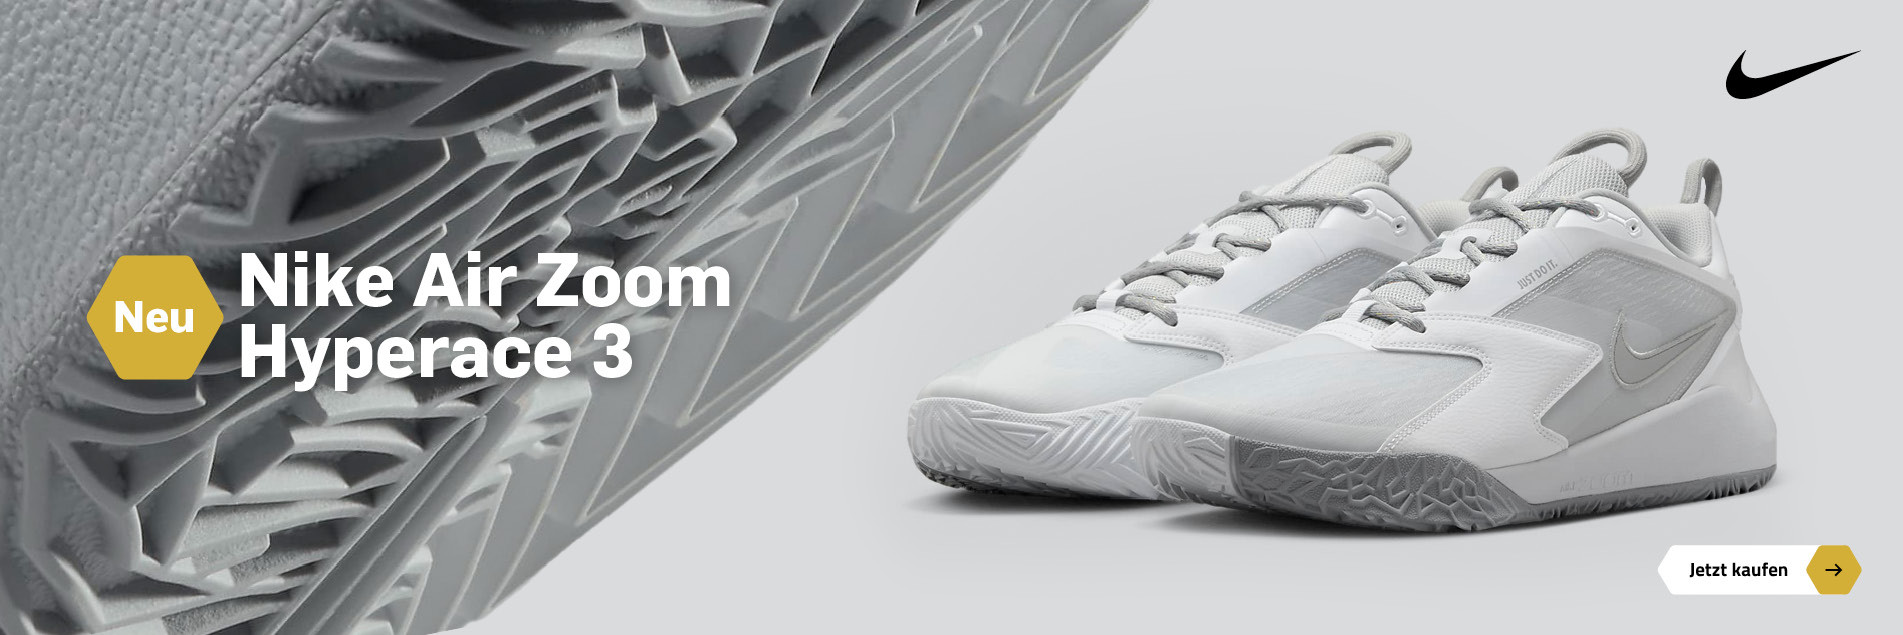 Nike Air Zoom Hyperace 3